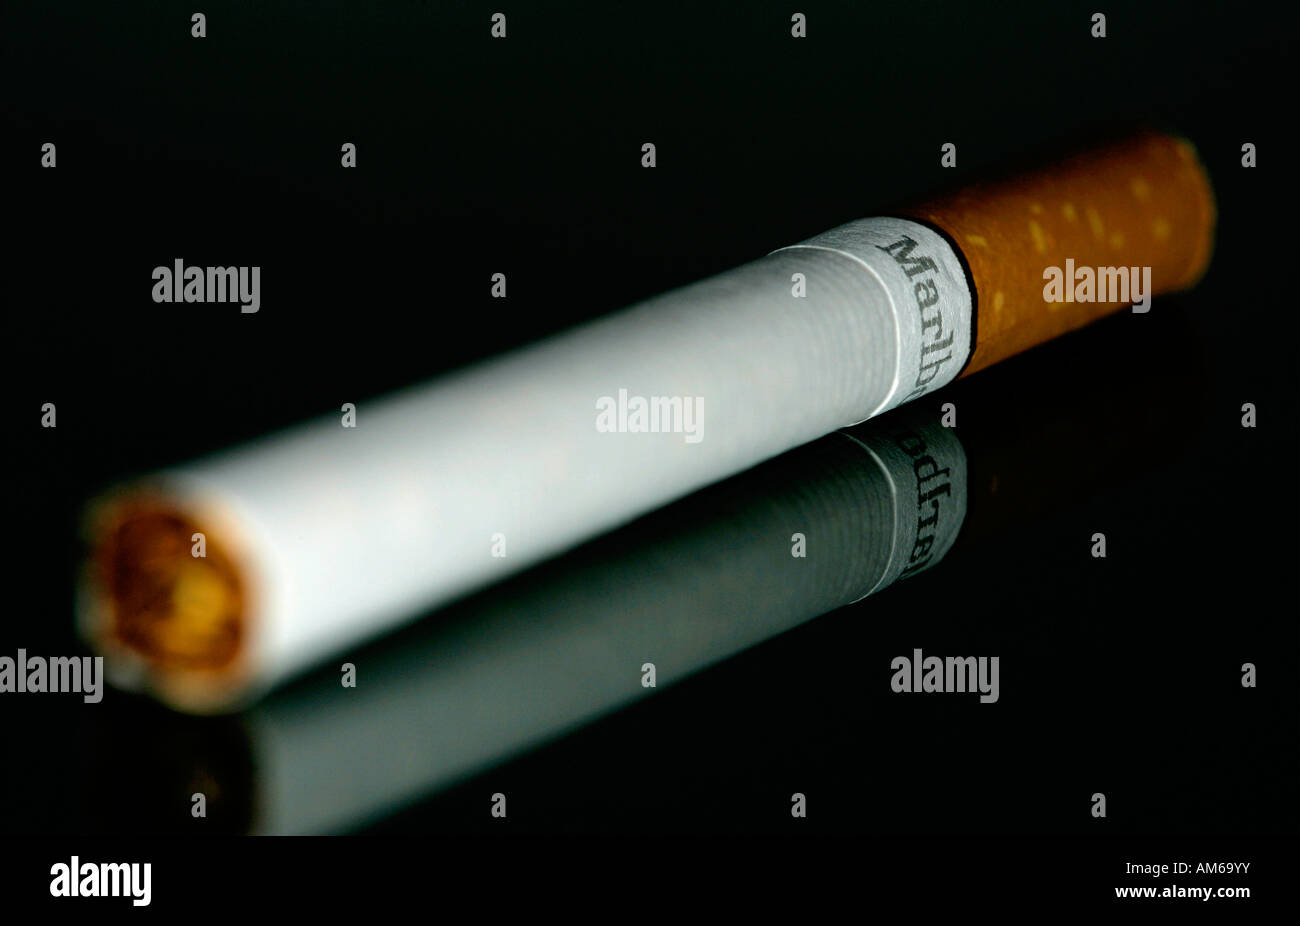 A Marlboro cigarette Stock Photo